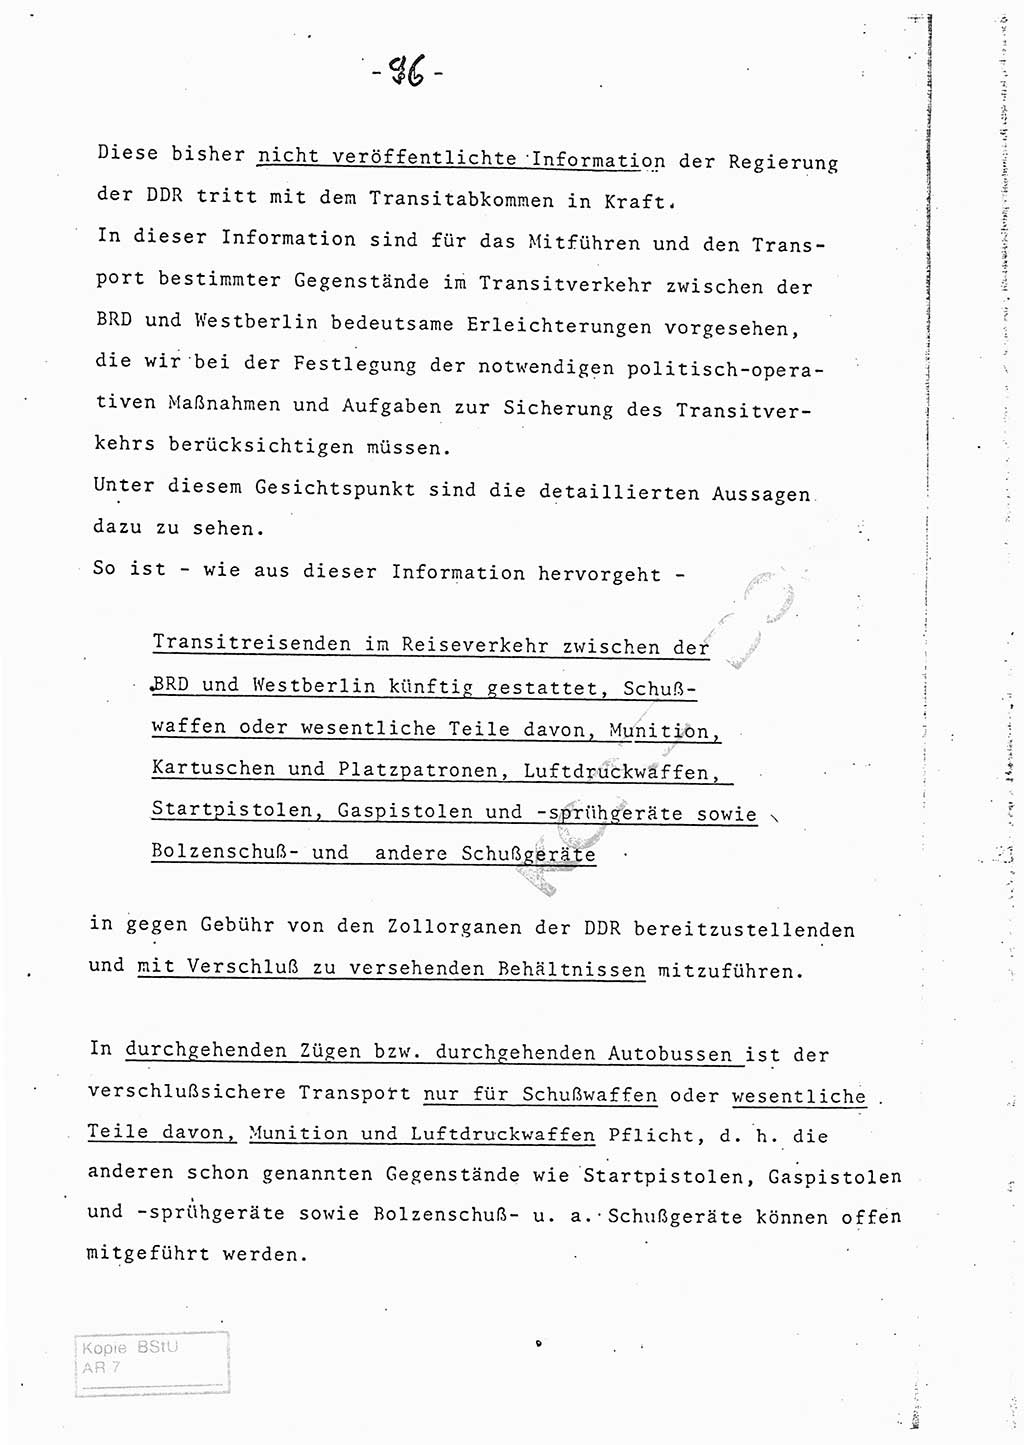 Referat (Entwurf) des Genossen Minister (Generaloberst Erich Mielke) auf der Dienstkonferenz 1972, Ministerium für Staatssicherheit (MfS) [Deutsche Demokratische Republik (DDR)], Der Minister, Geheime Verschlußsache (GVS) 008-150/72, Berlin 25.2.1972, Seite 96 (Ref. Entw. DK MfS DDR Min. GVS 008-150/72 1972, S. 96)